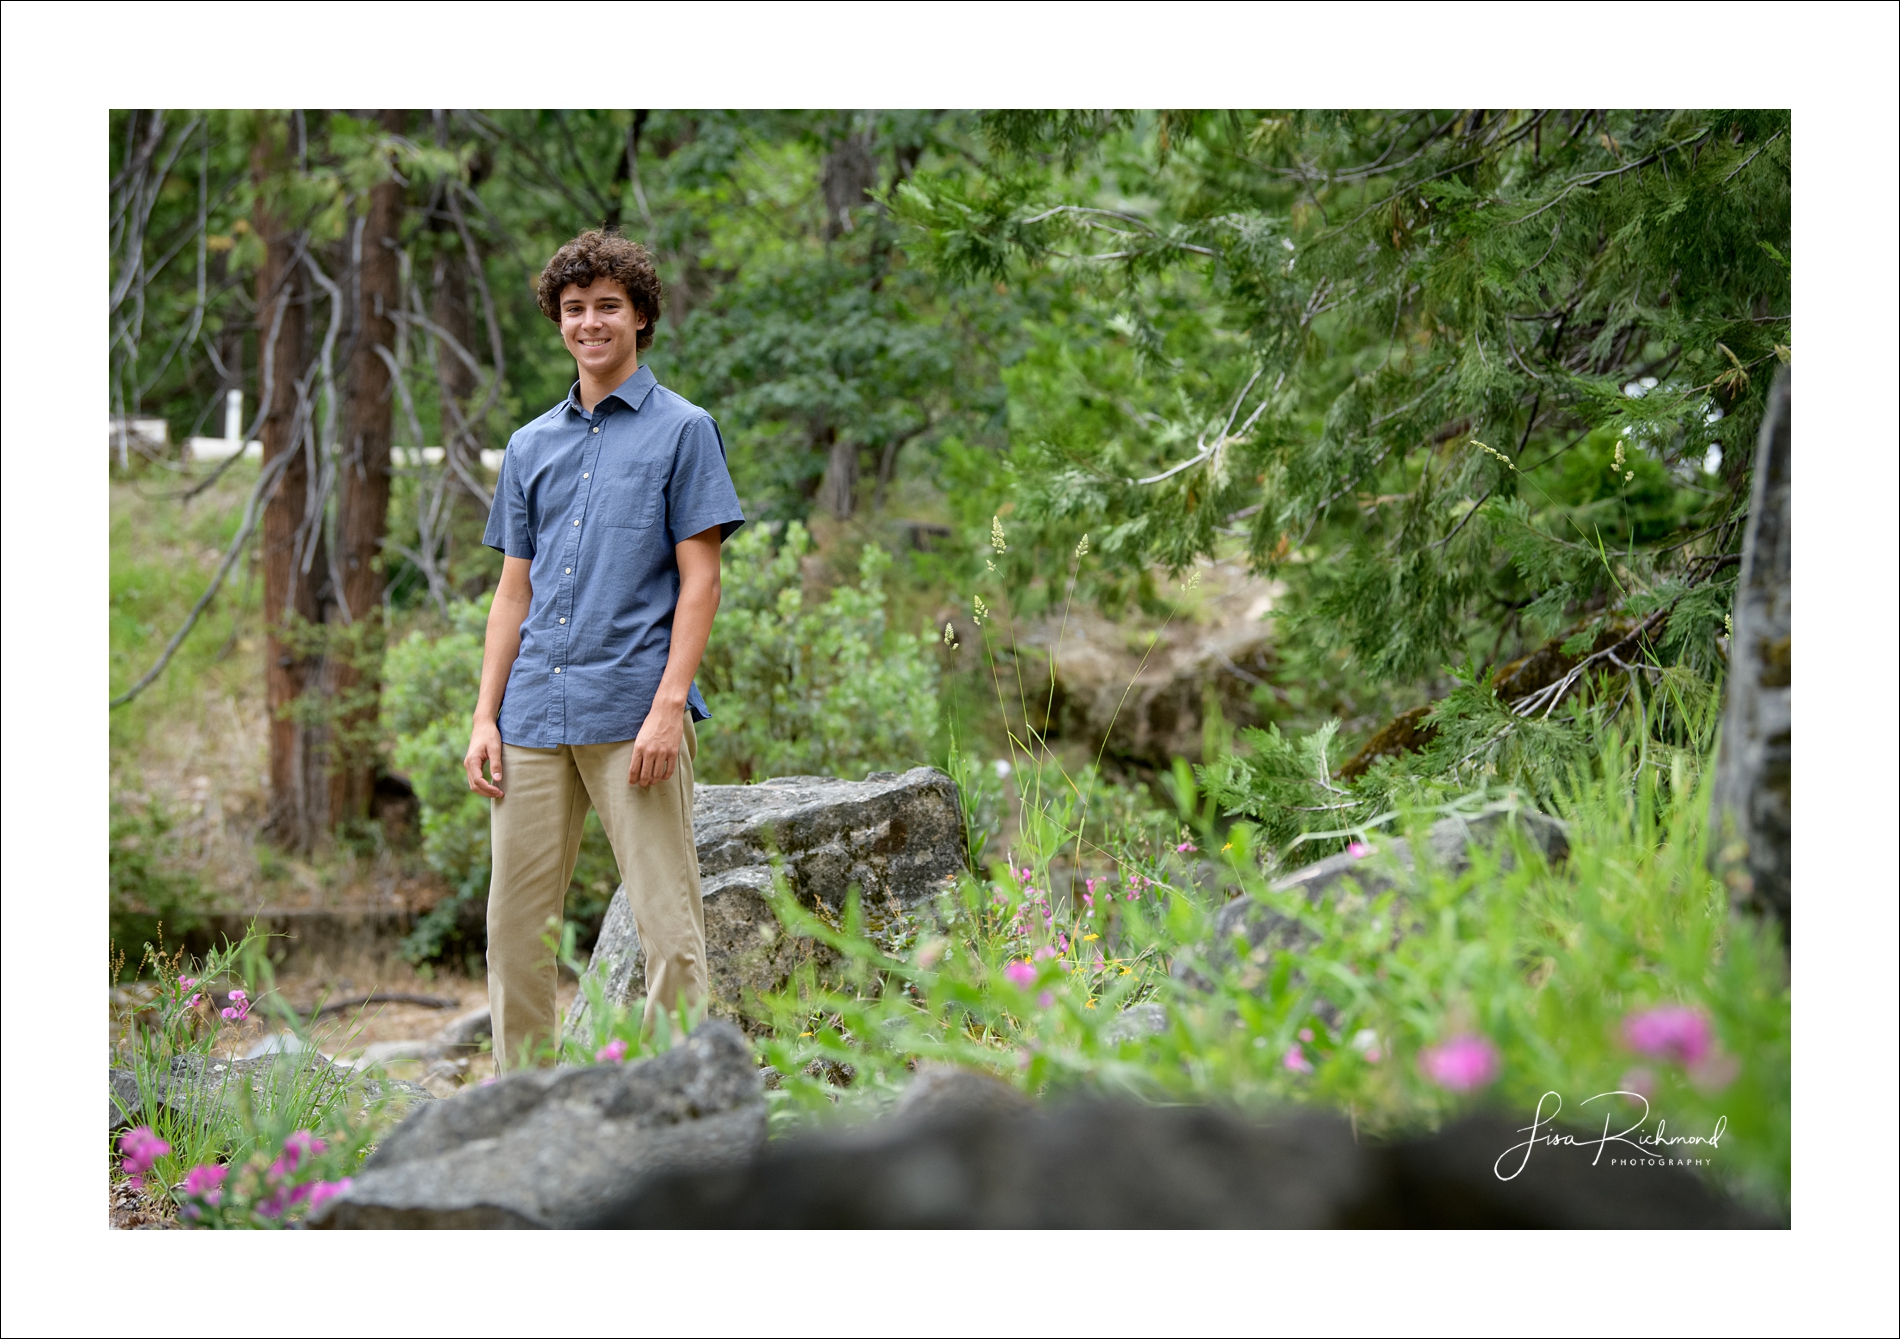 Ethan, 2020 Vista del Lago graduate